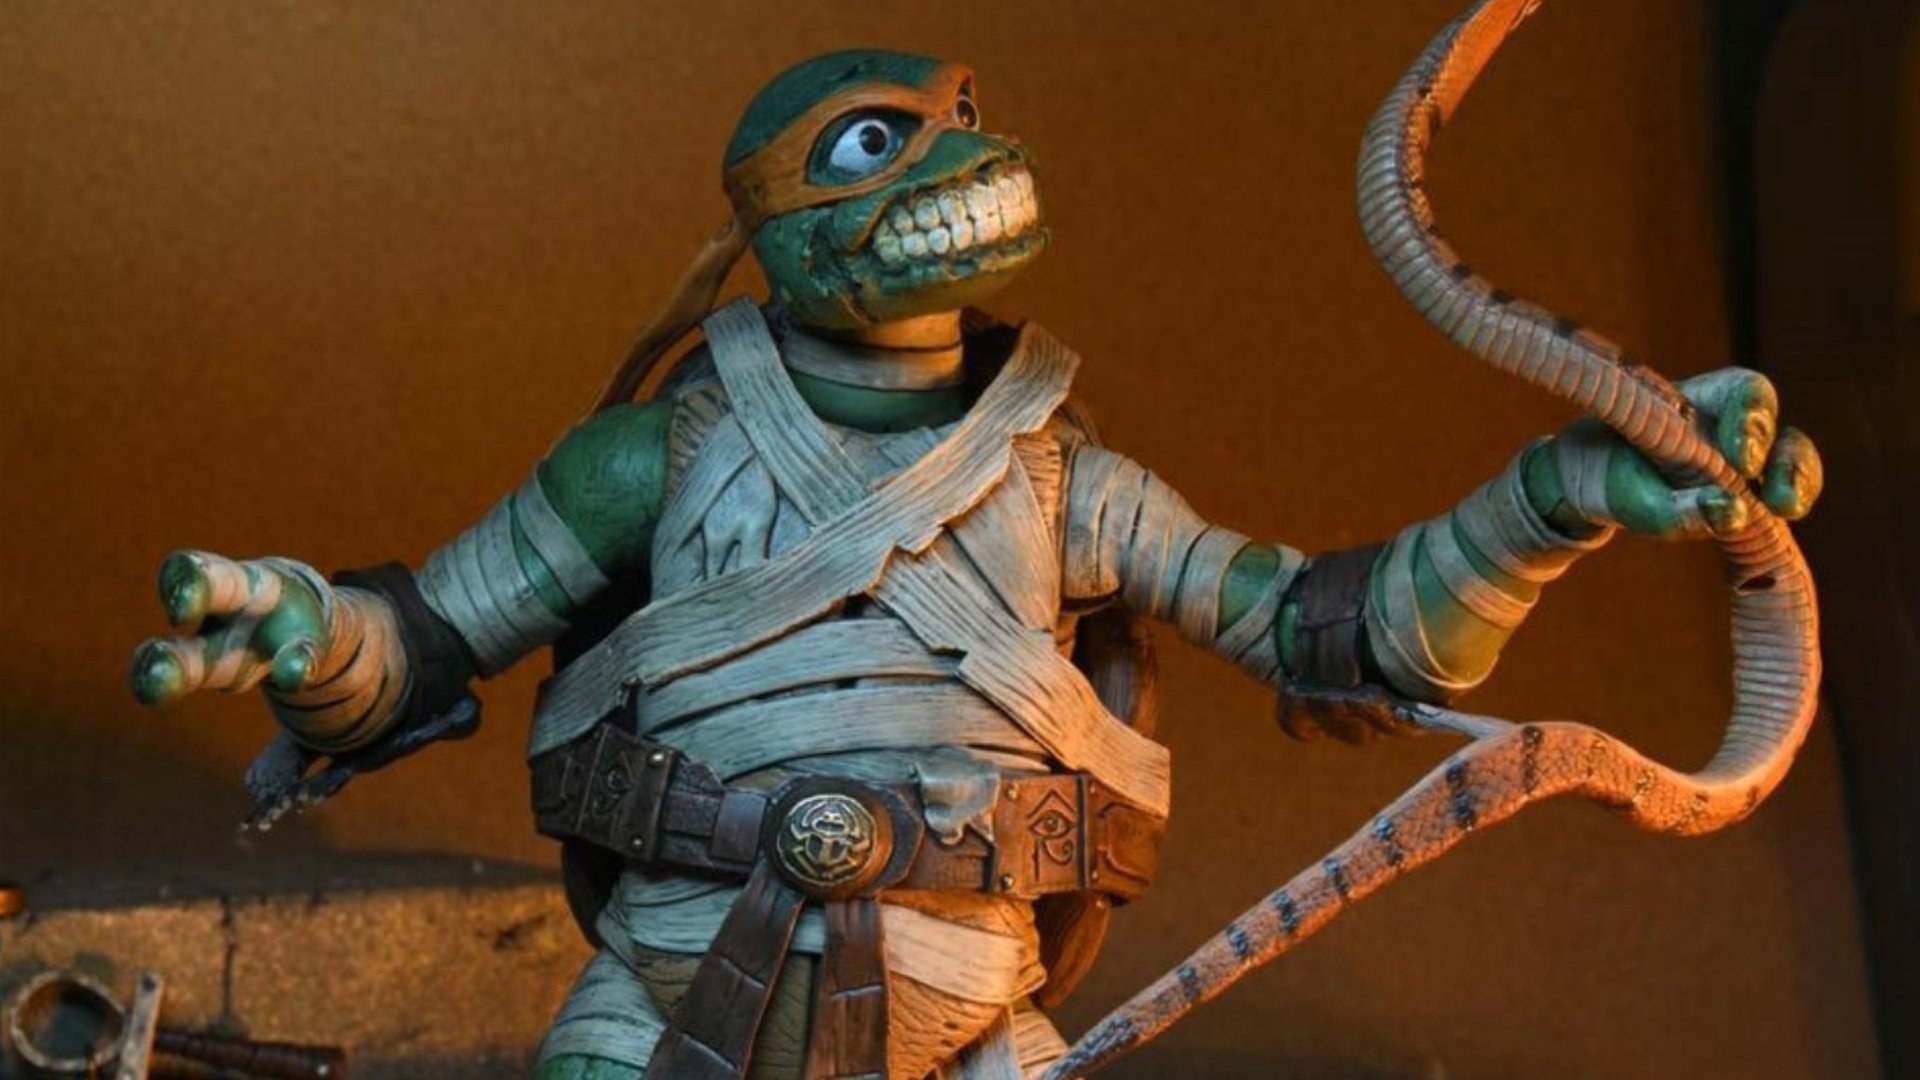 NECA Universal Monsters x Teenage Mutant Ninja Turtles Ultimate Leonardo As The Hunchback 7 Figure